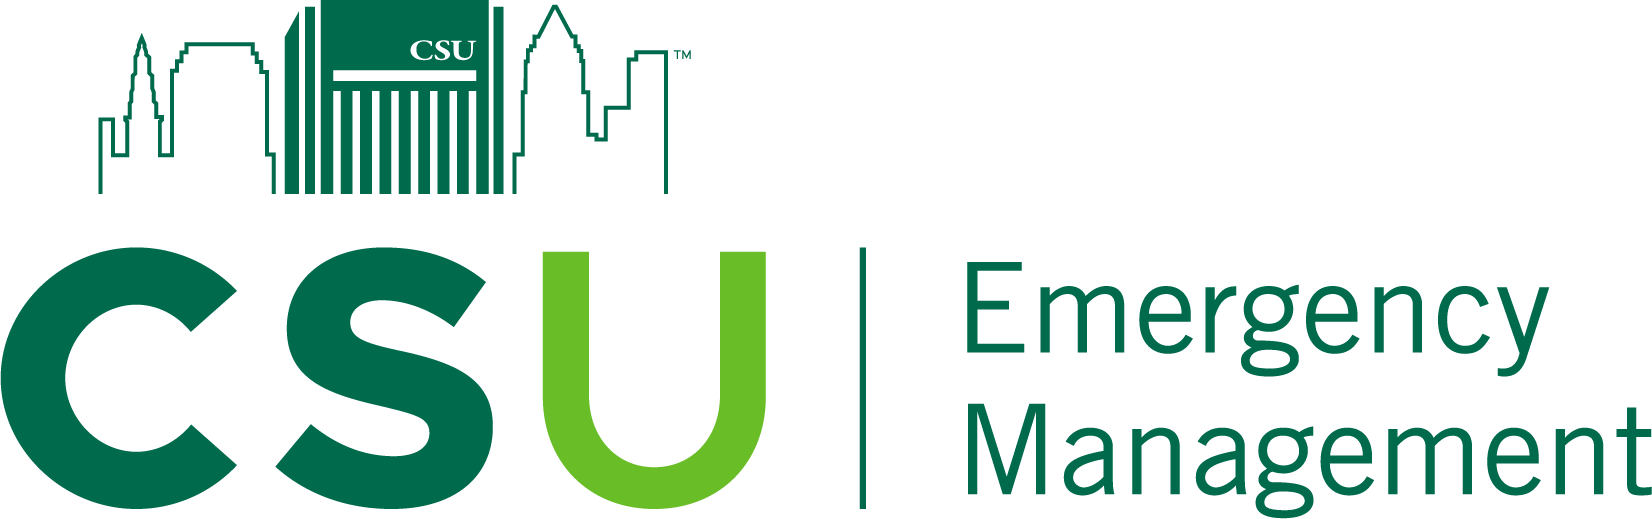 CSU EM Logo